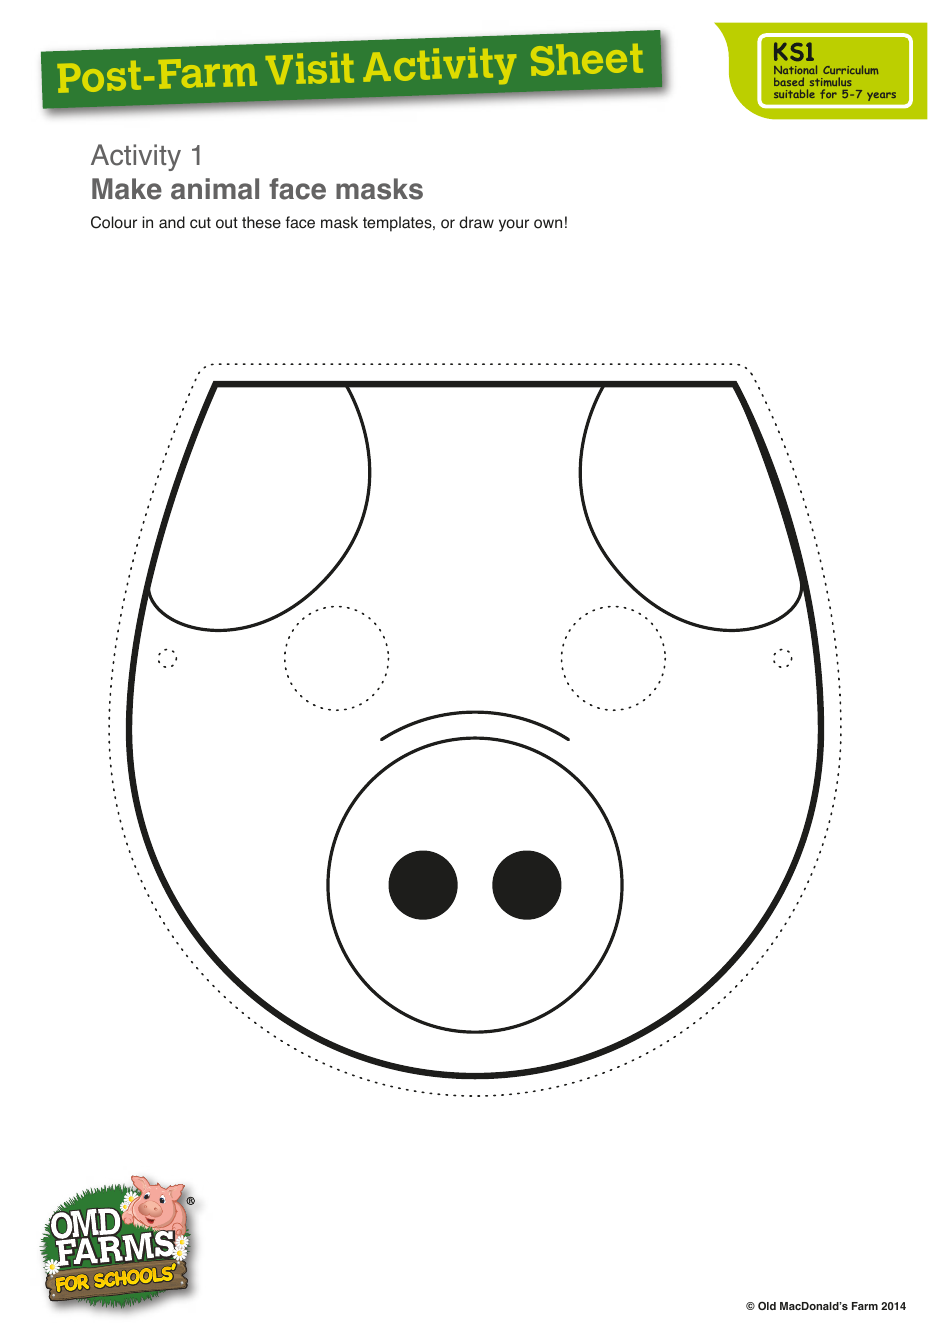 Farm animal mask templates - colorful and fun printable designs